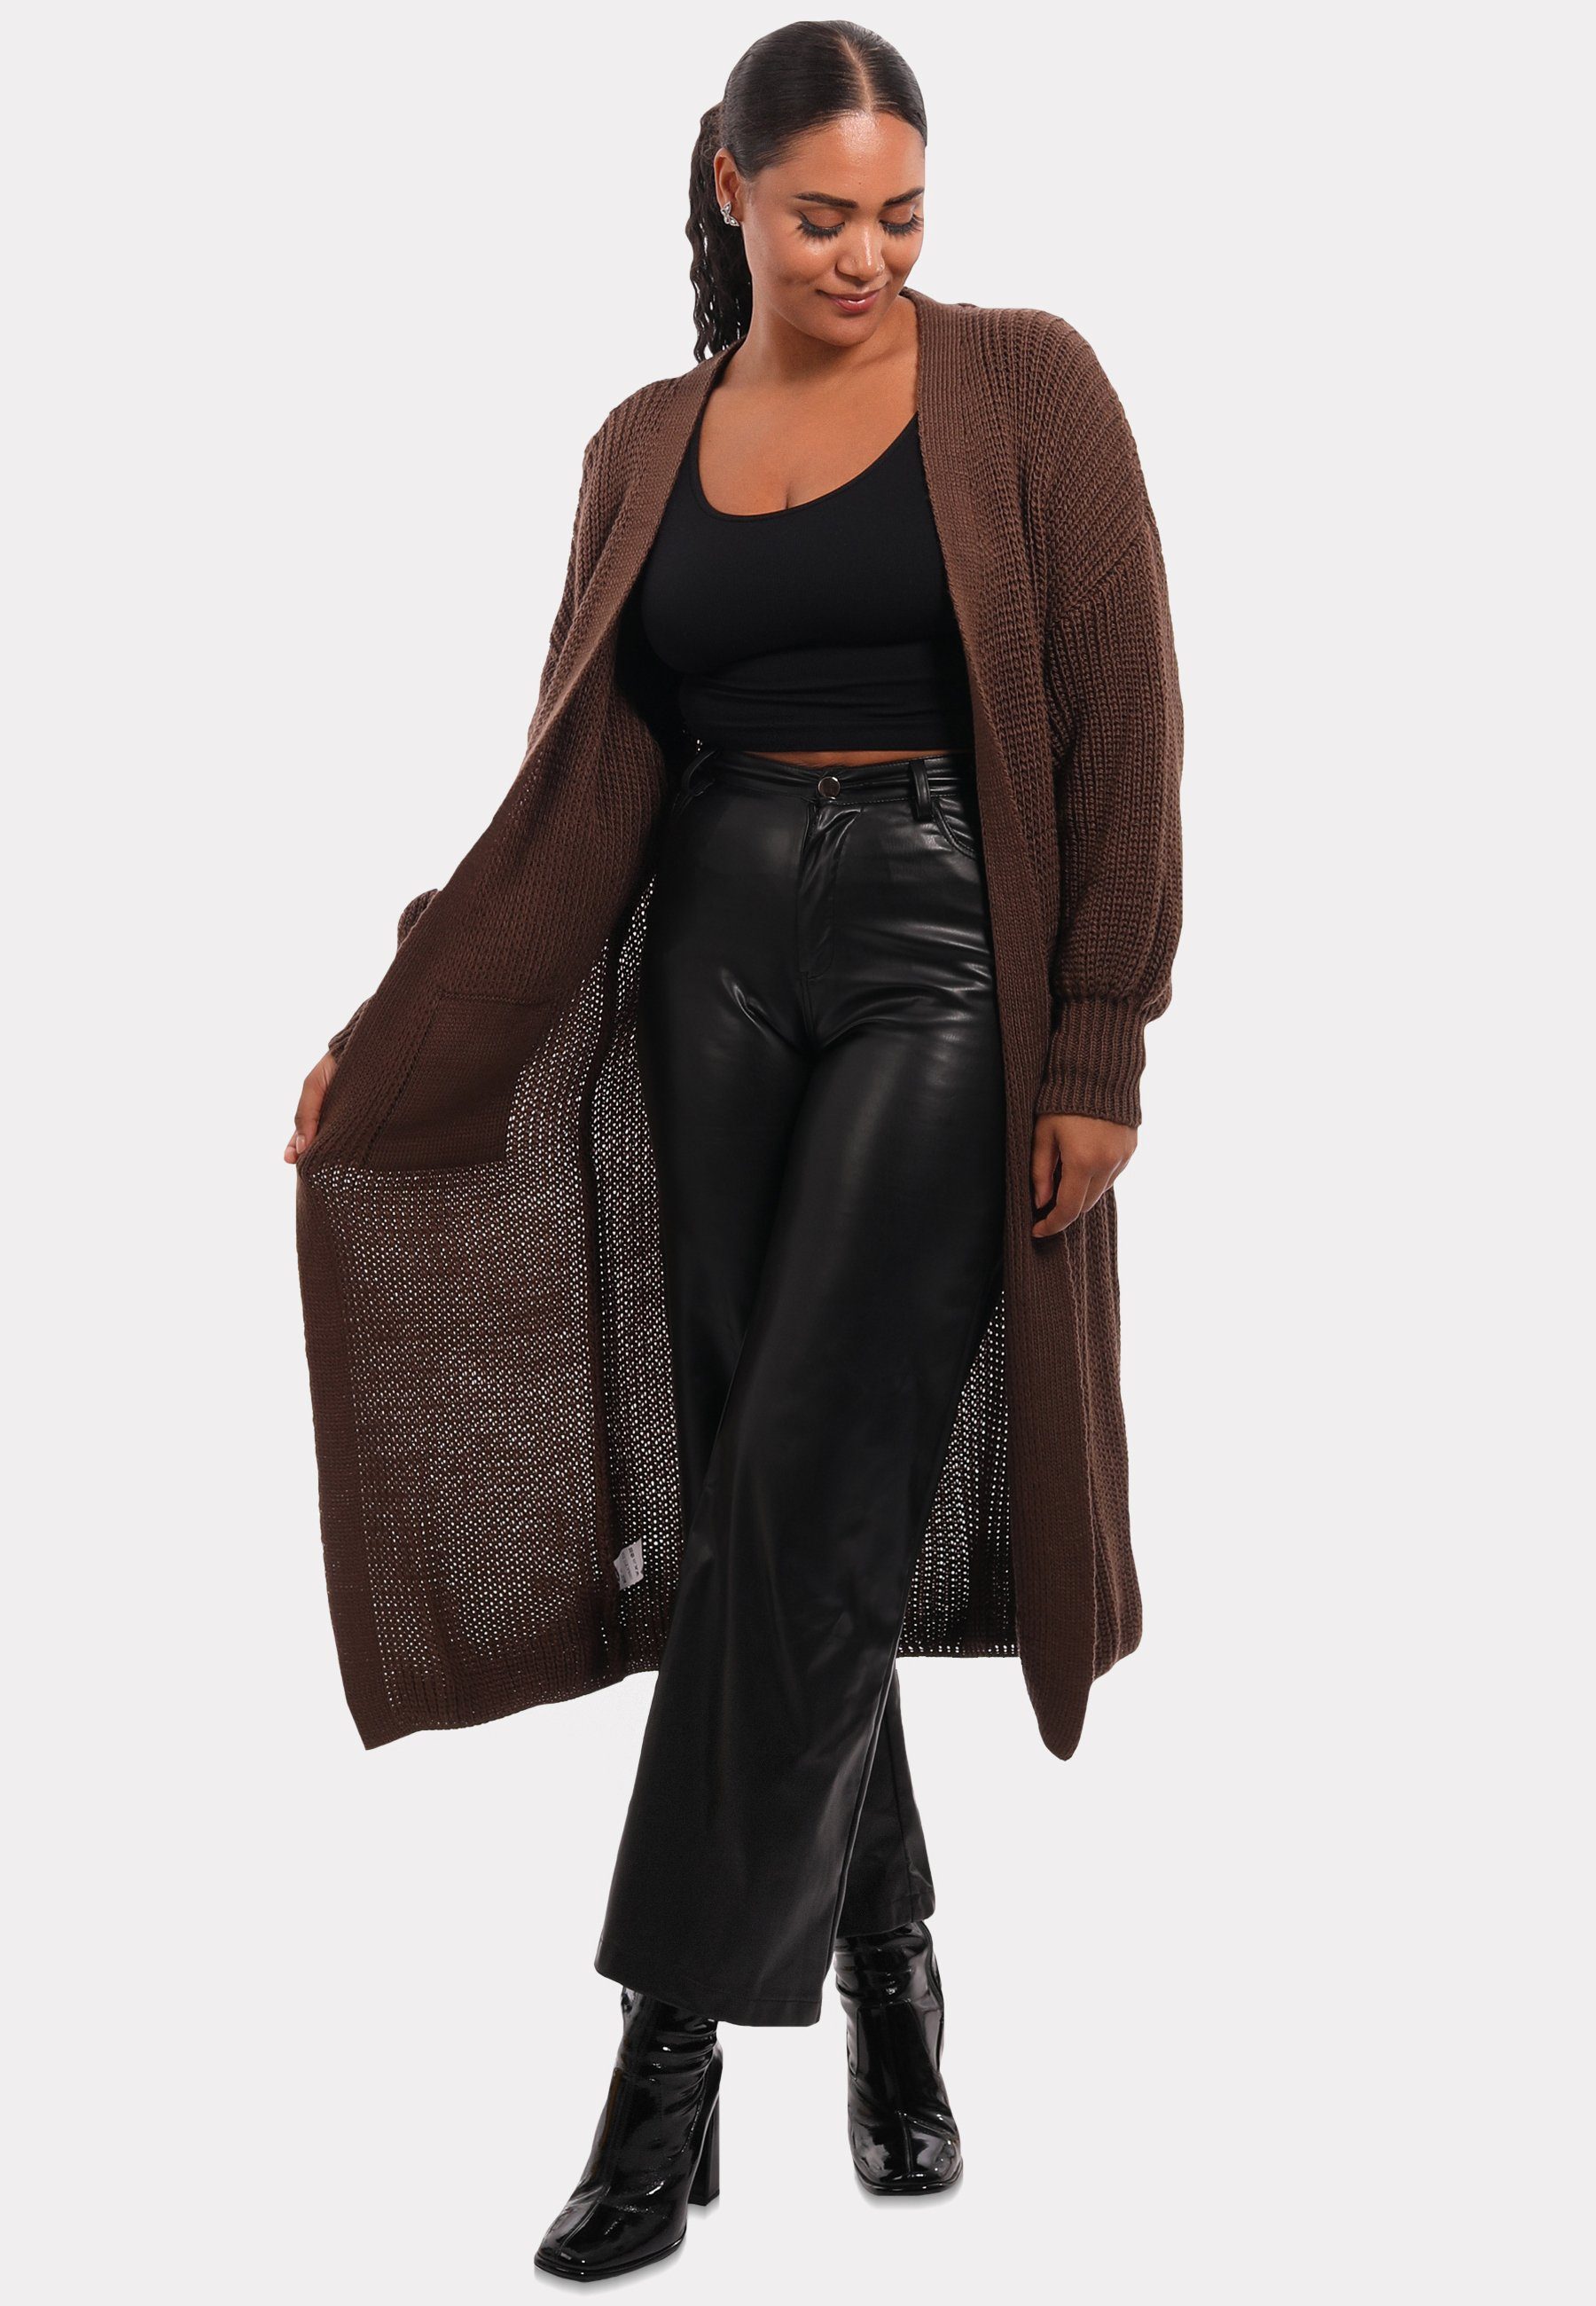 Style in Strickjacke Fashion mit Cardigan braun Verschlusslos YC Unifarbe, & Taschen aufgesetzten Cardigan Basic